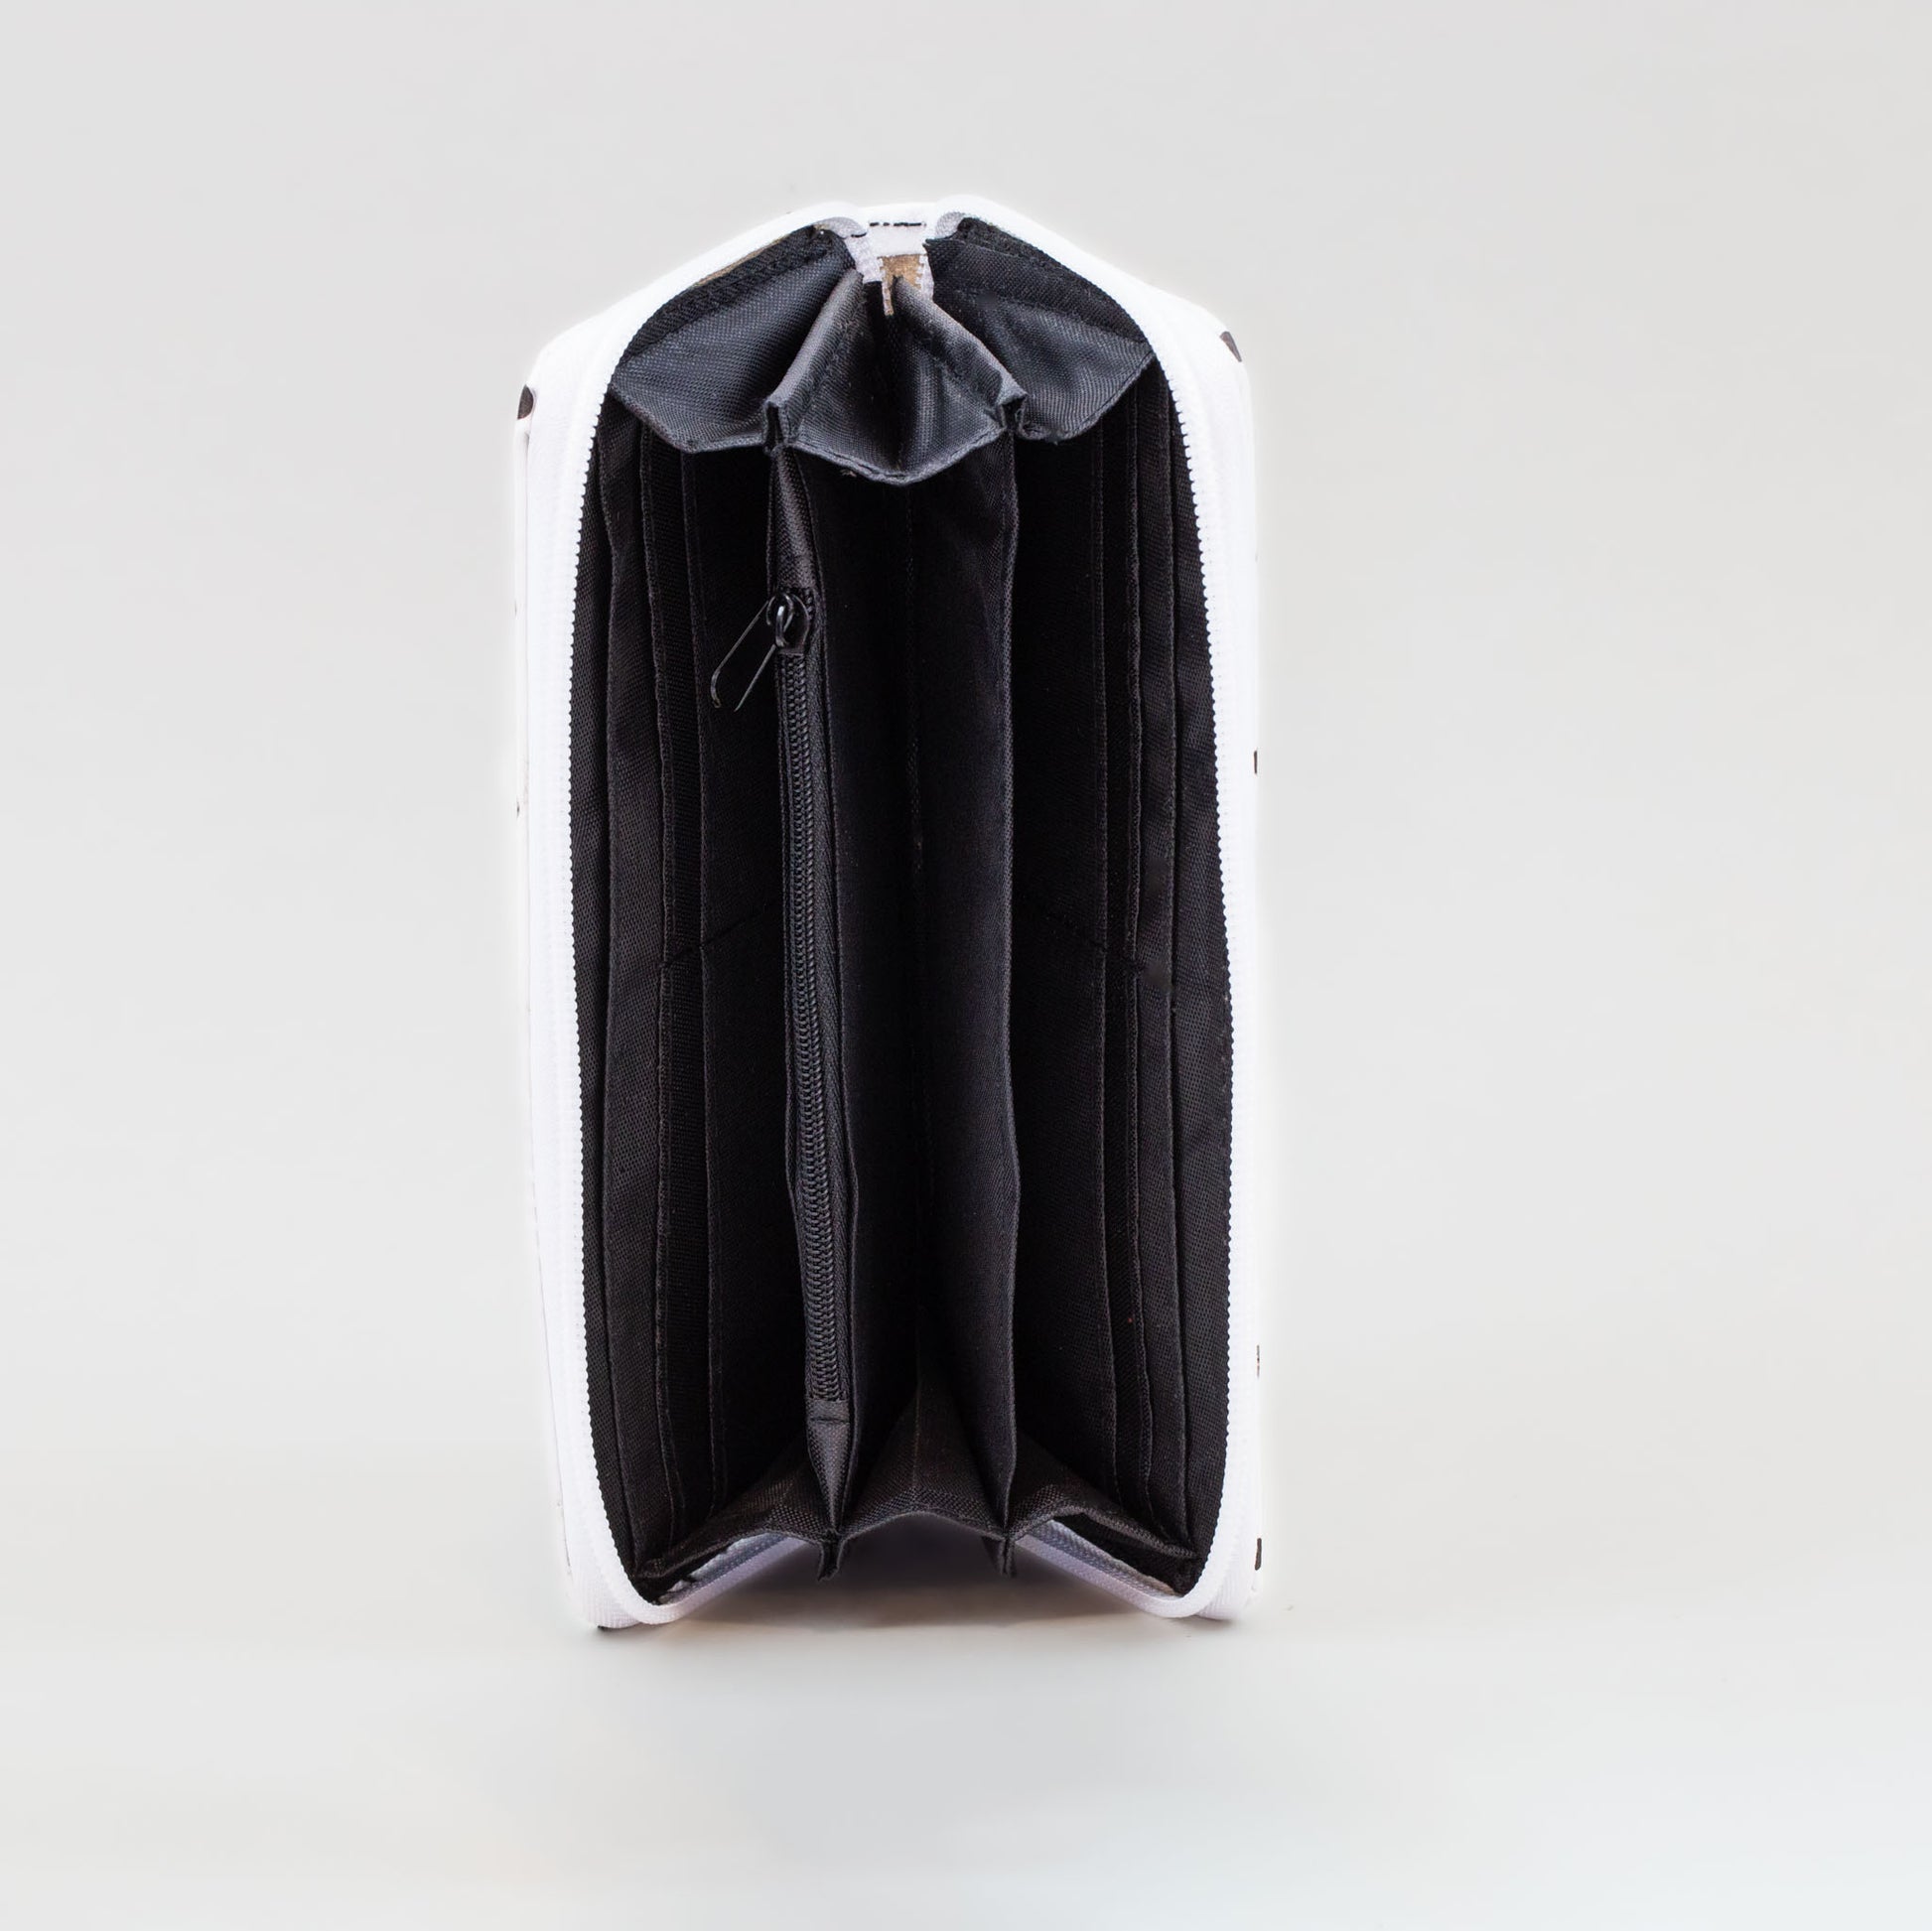 Portofel damă cu fermoar, alb negru, 14 compartimente - Buline